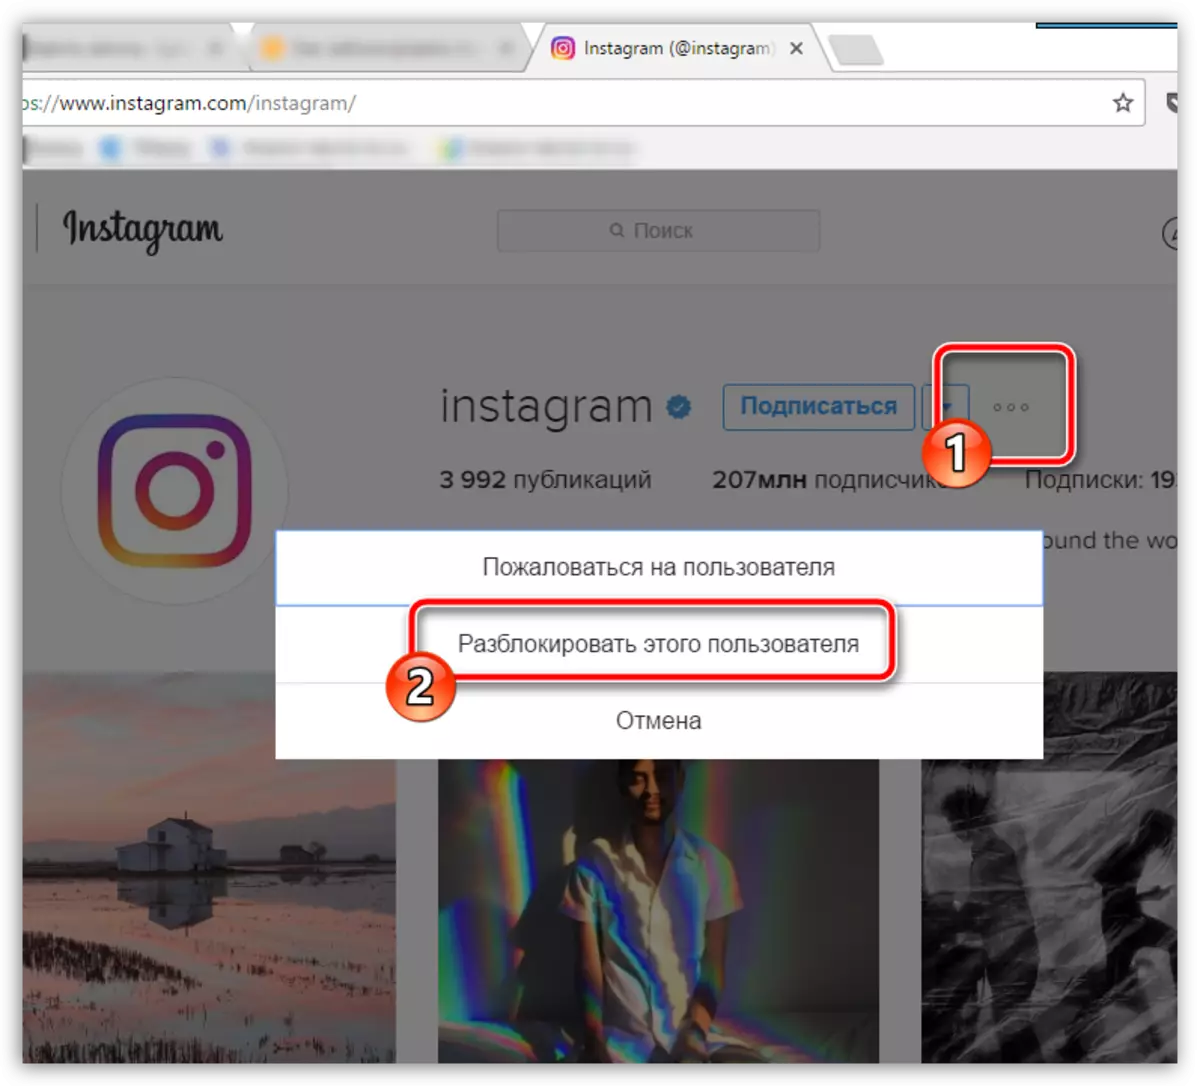 Desbloqueando um usuário do Instagram em um computador